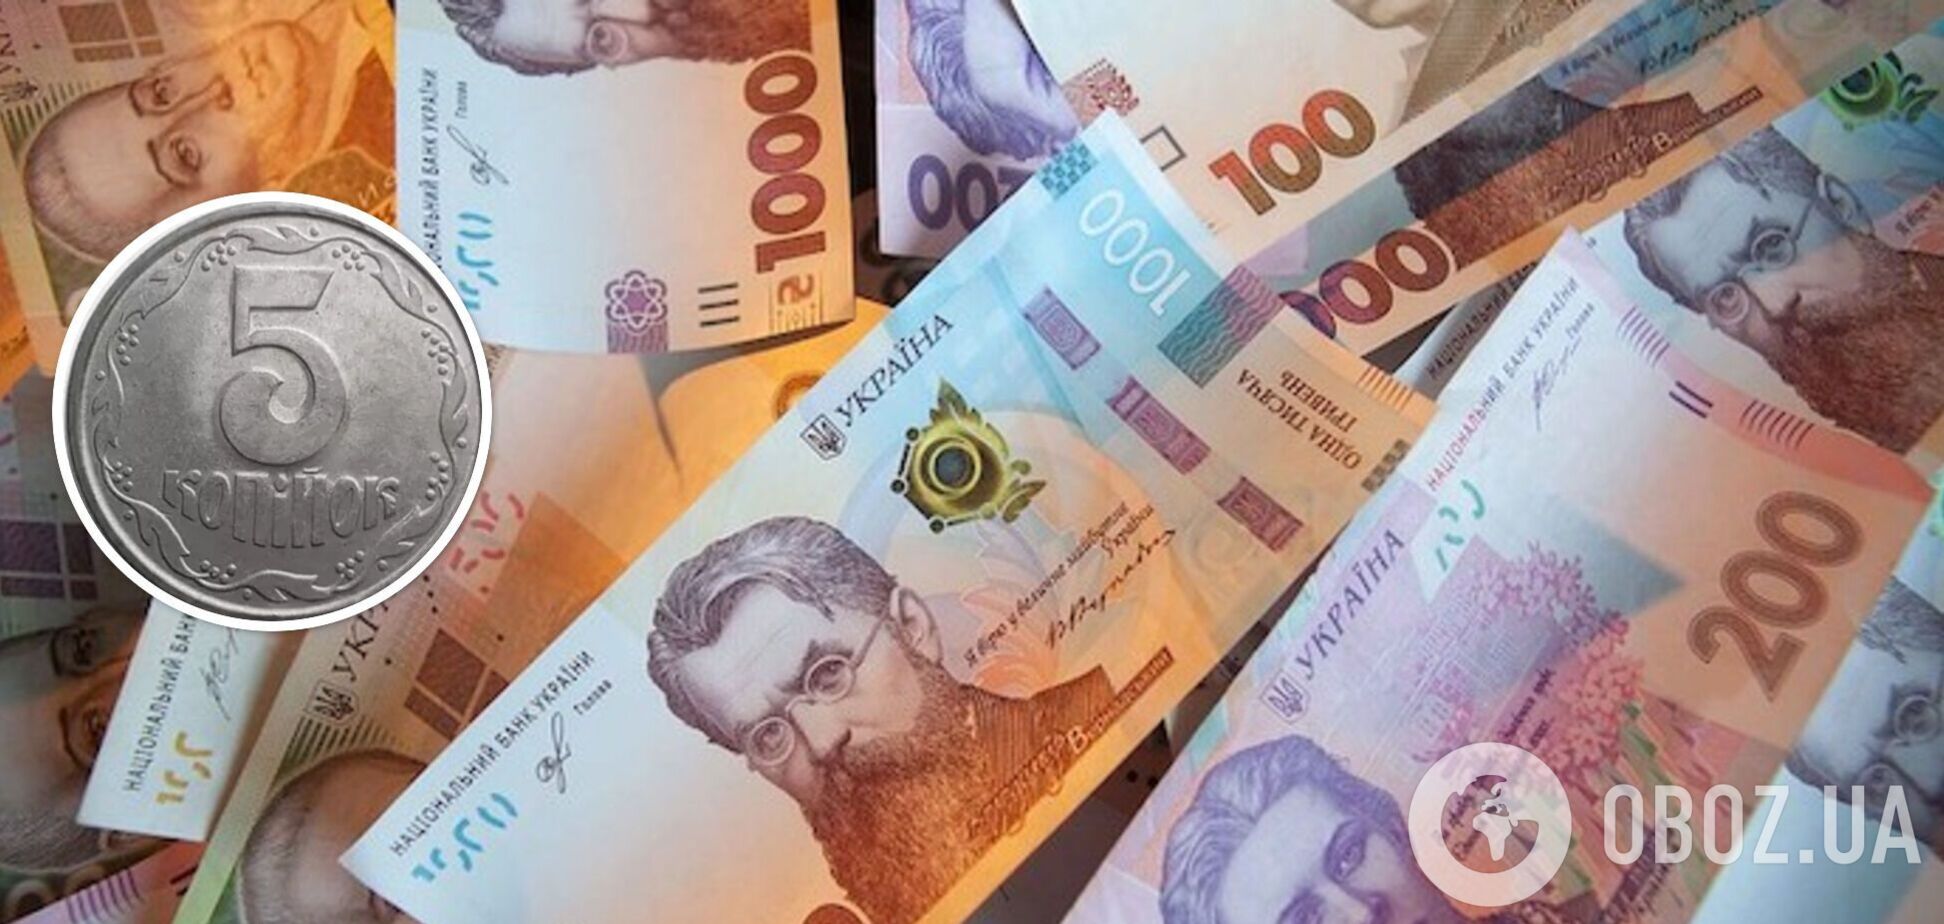 Українці можуть знайти у гаманцях 5 копійок, за які колекціонери заплатять тисячі гривень